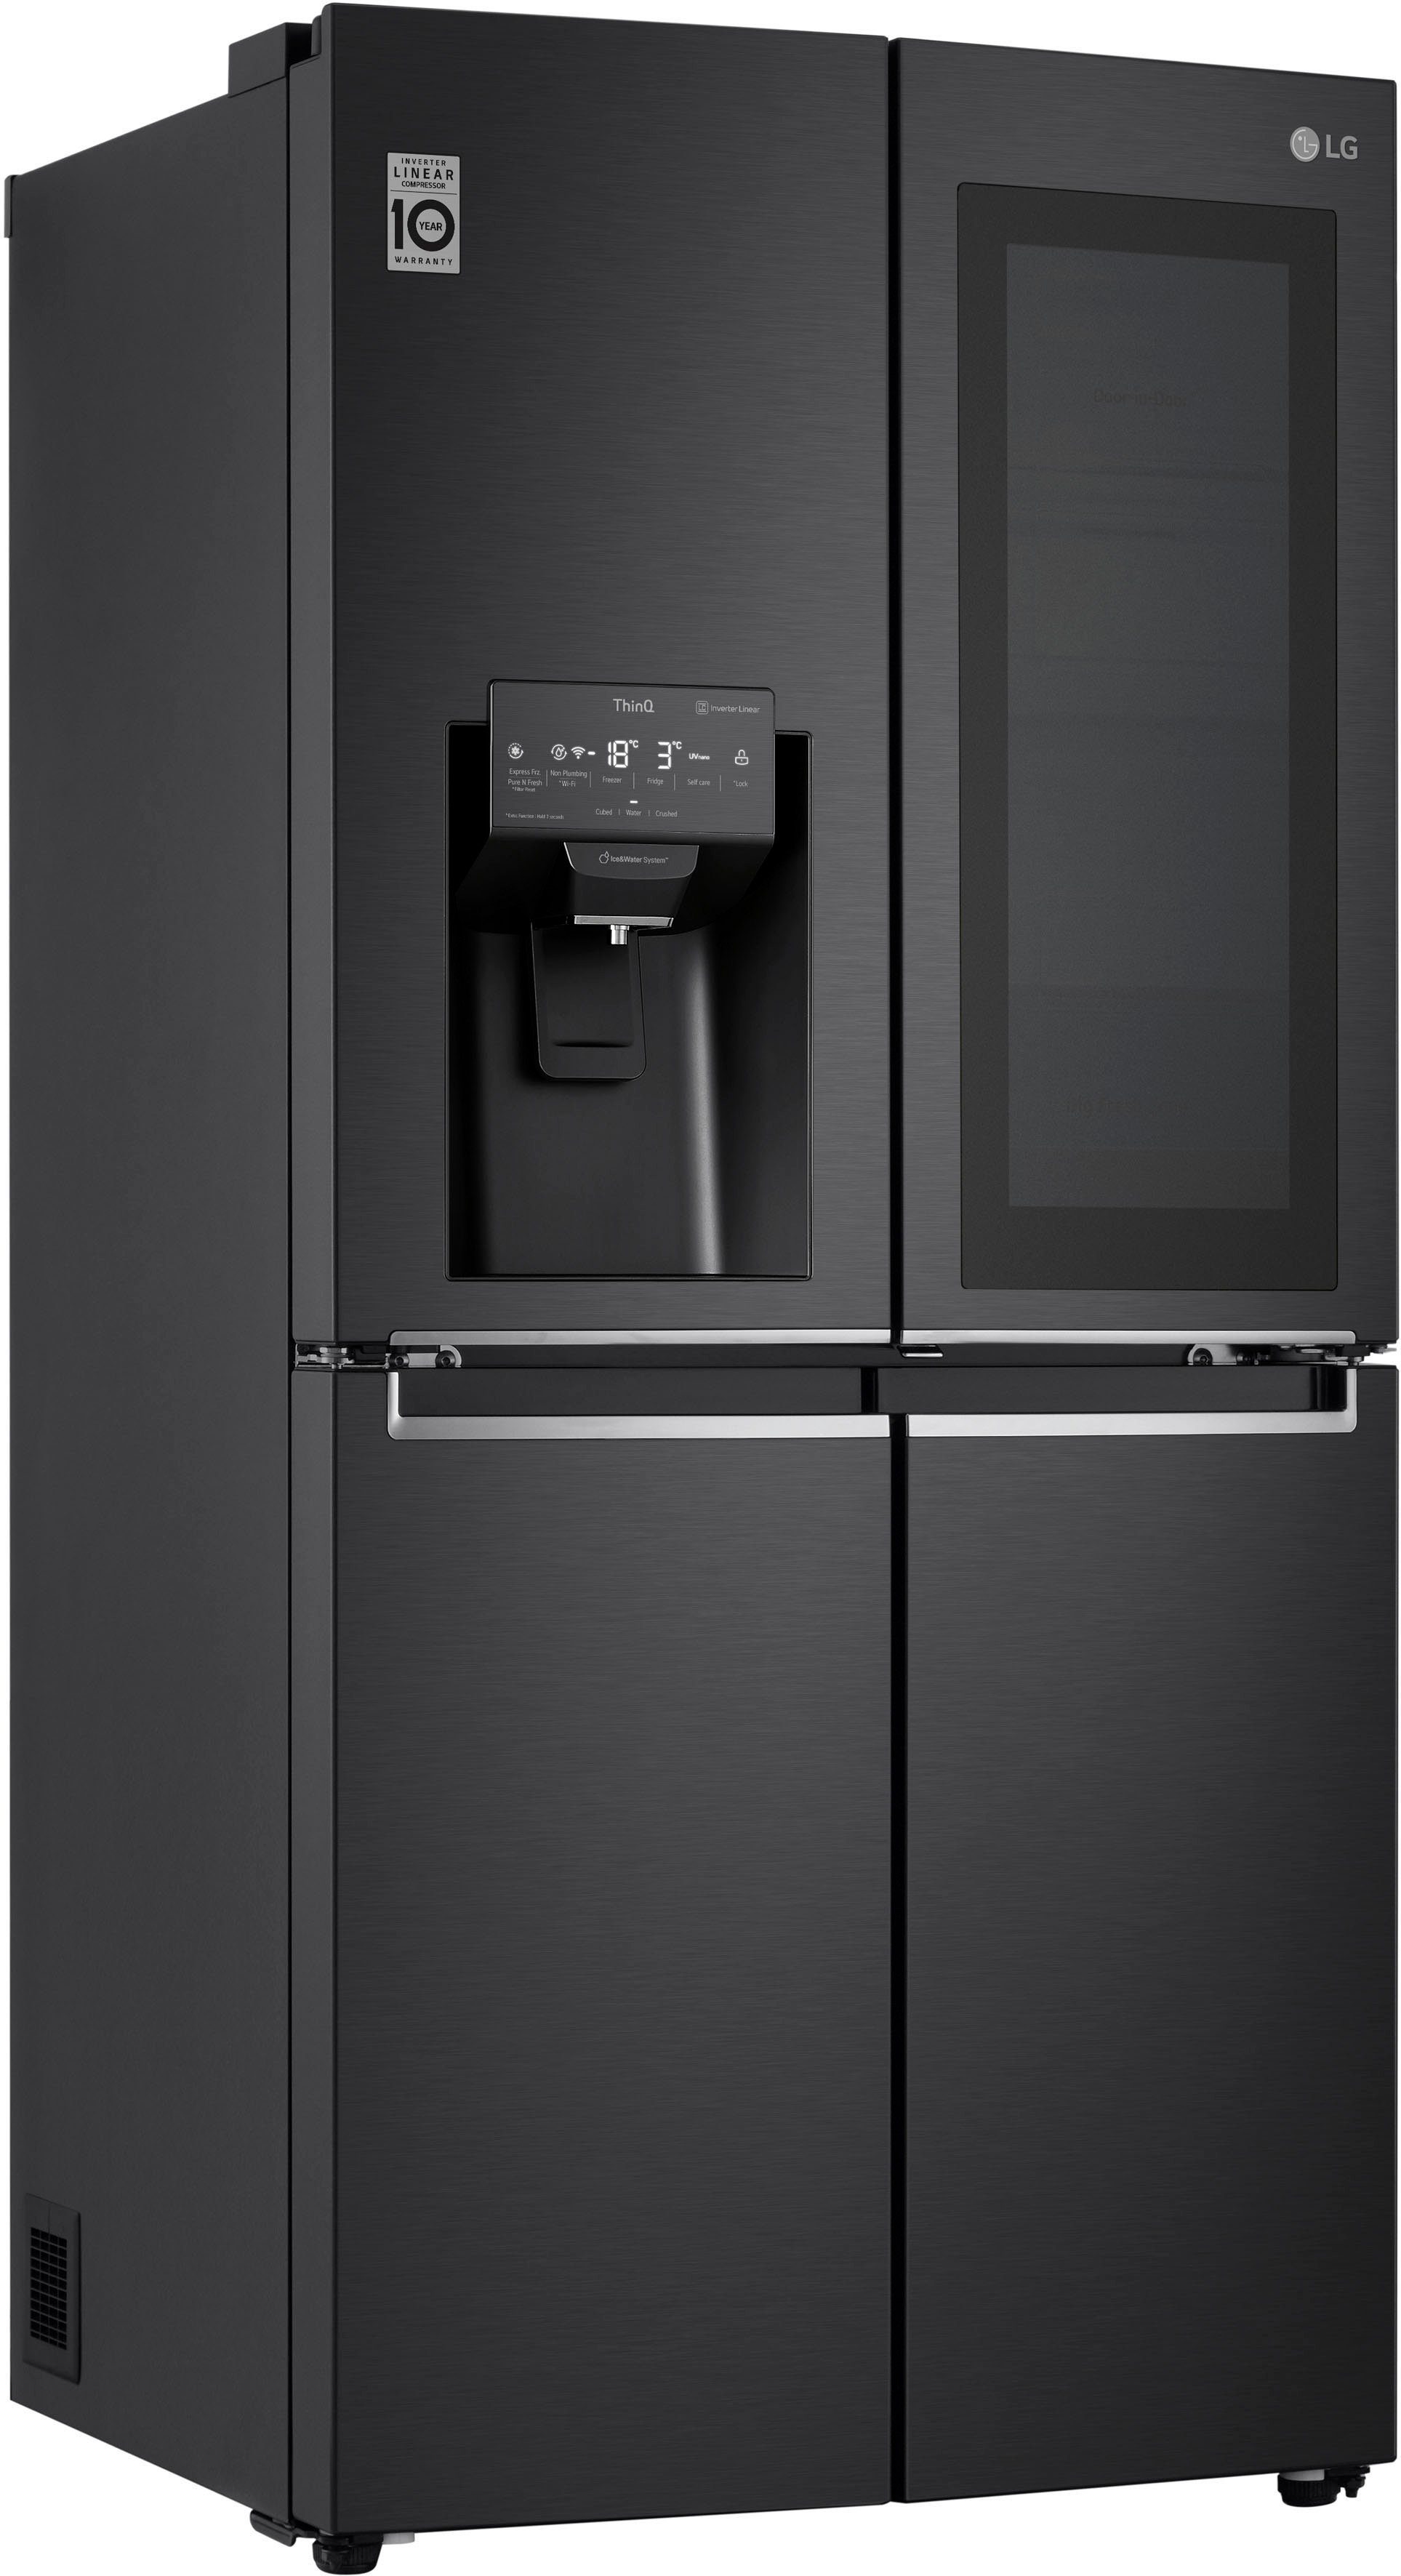 LG Side-by-Side-Kühlschränke online kaufen | OTTO